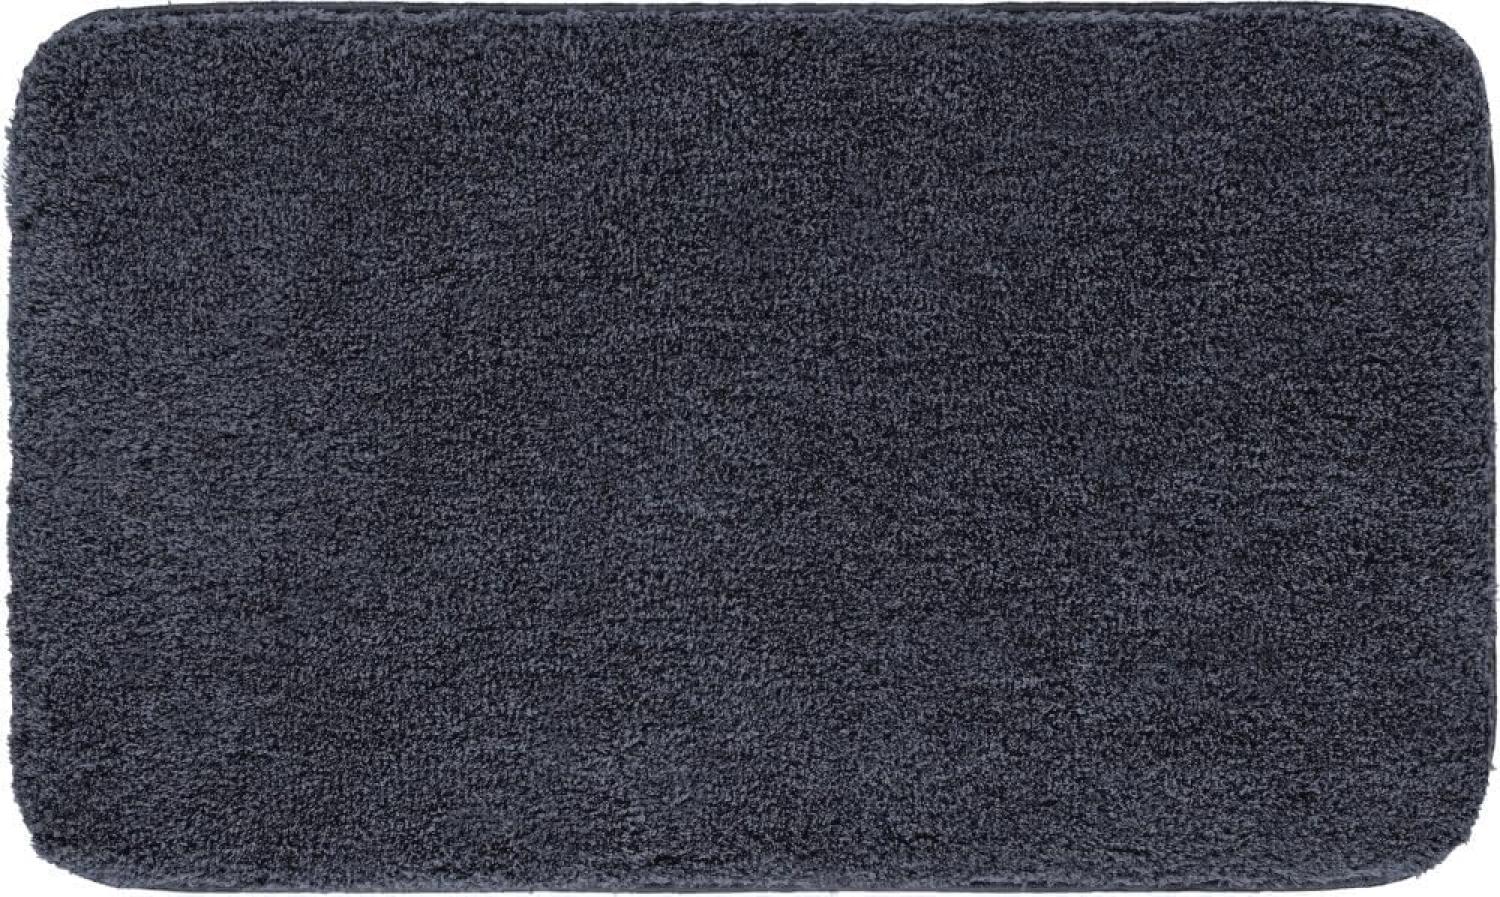 Grund Melange Badteppich, Acryl, Granit, 50 x 80 cm Bild 1